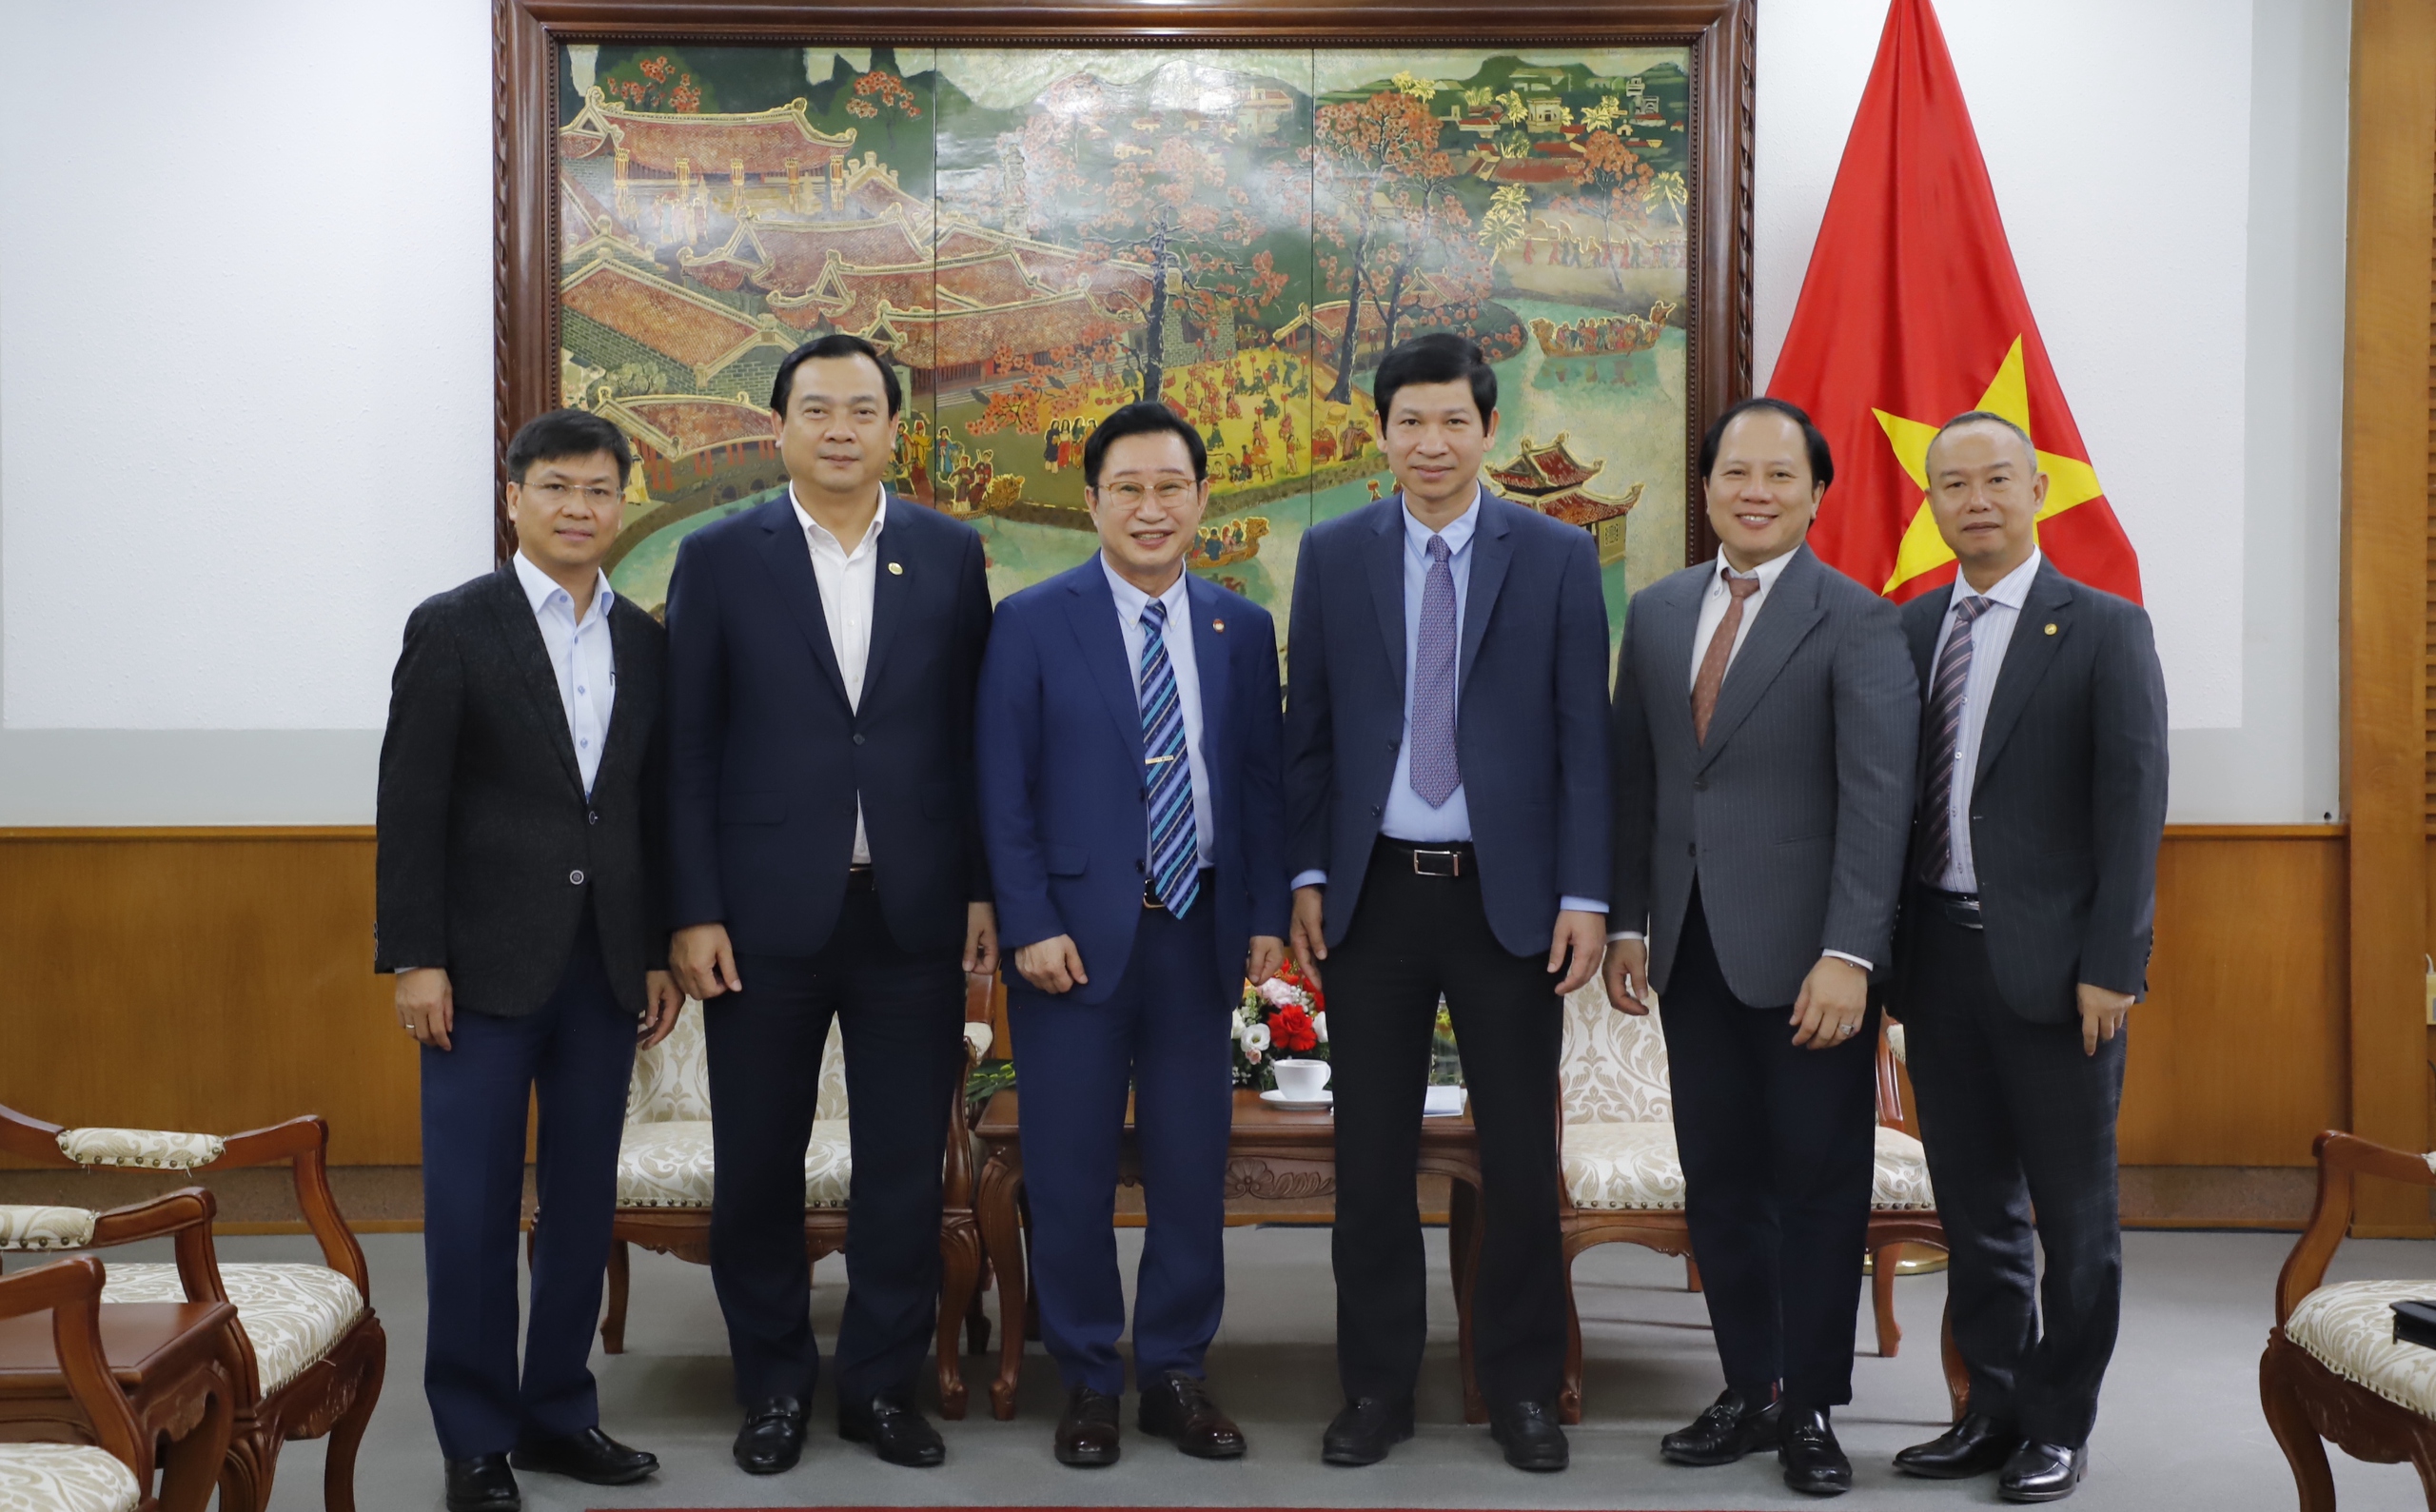 Thứ trưởng Hồ An Phong gặp mặt Đại sứ Du lịch Việt Nam tại Hàn Quốc Lý Xương Căn - Ảnh 5.